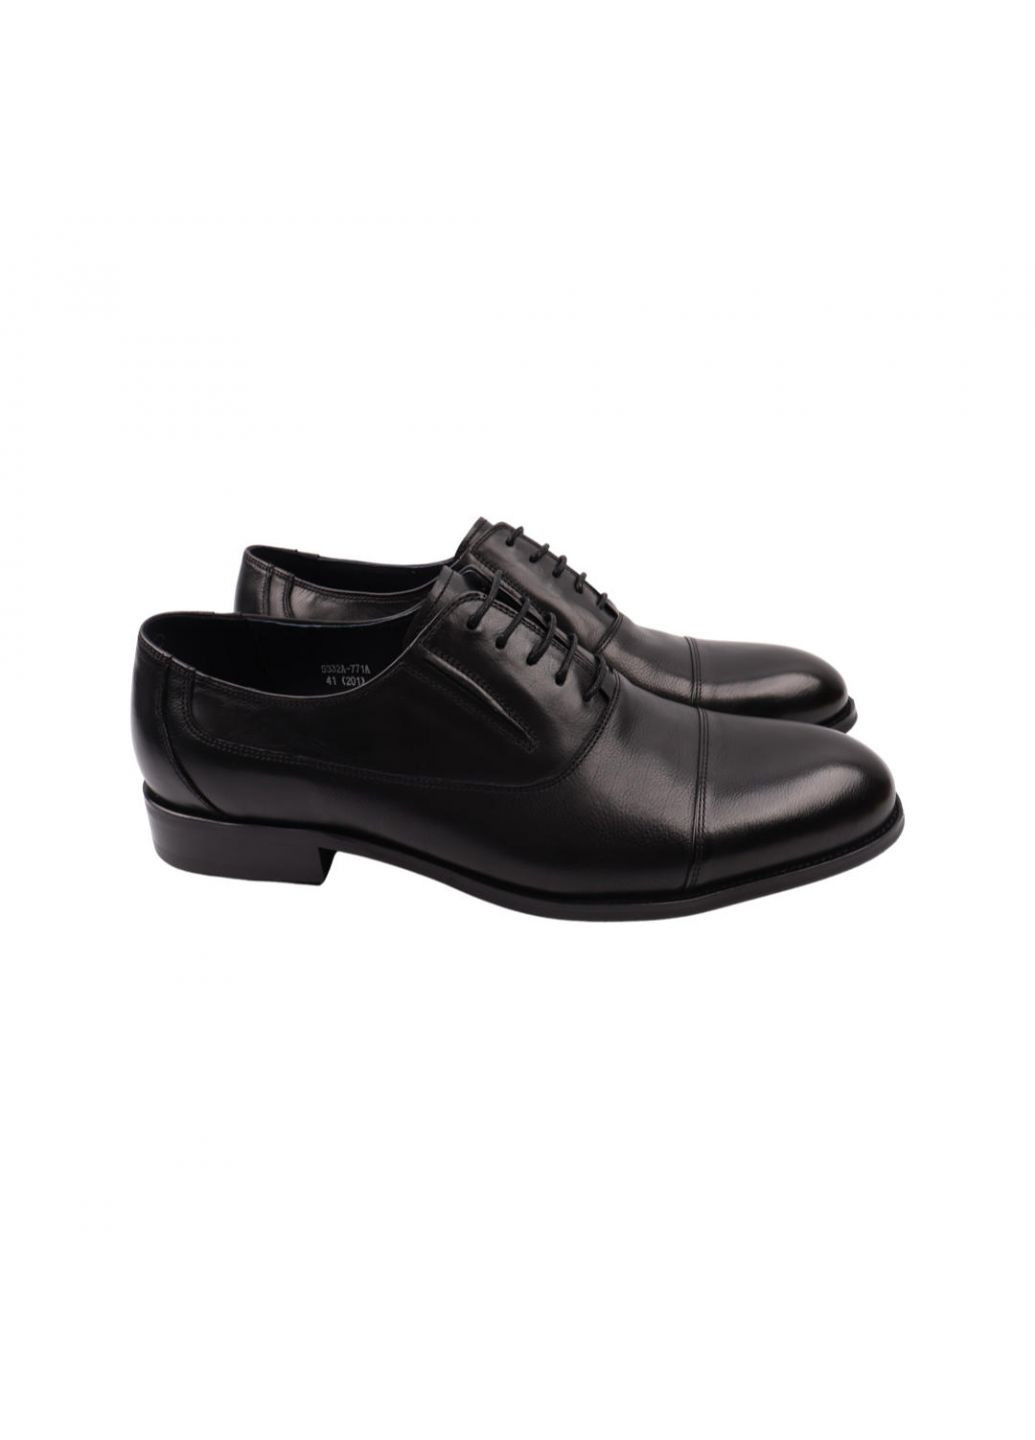 Туфлі чоловічі Lido Marinozi чорні натуральна шкіра Lido Marinozzi 259-22dt (257440204)